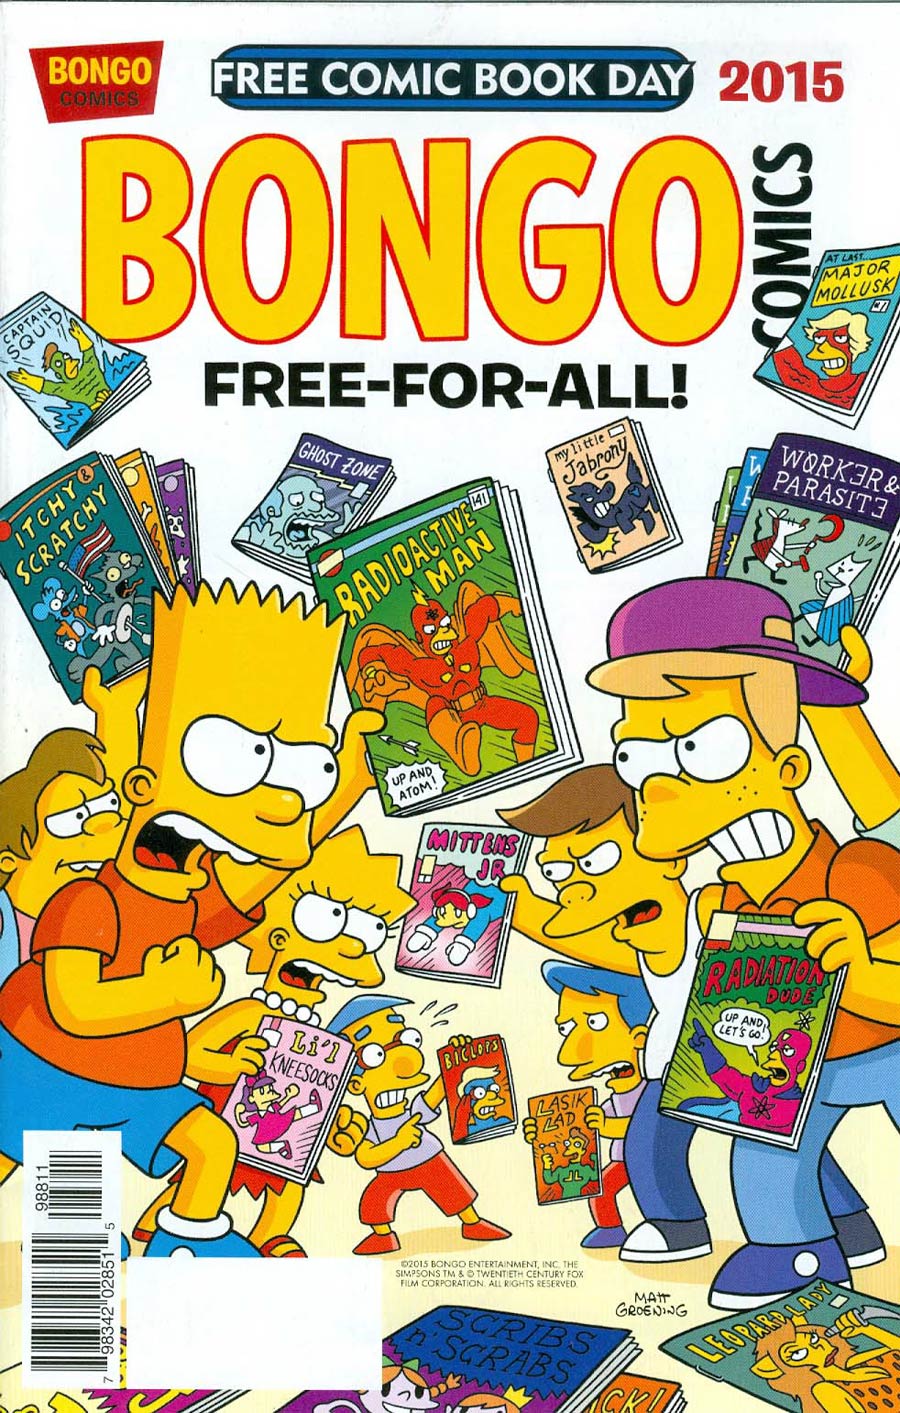 FCBD 2015 Bongo Comics Free-For-All